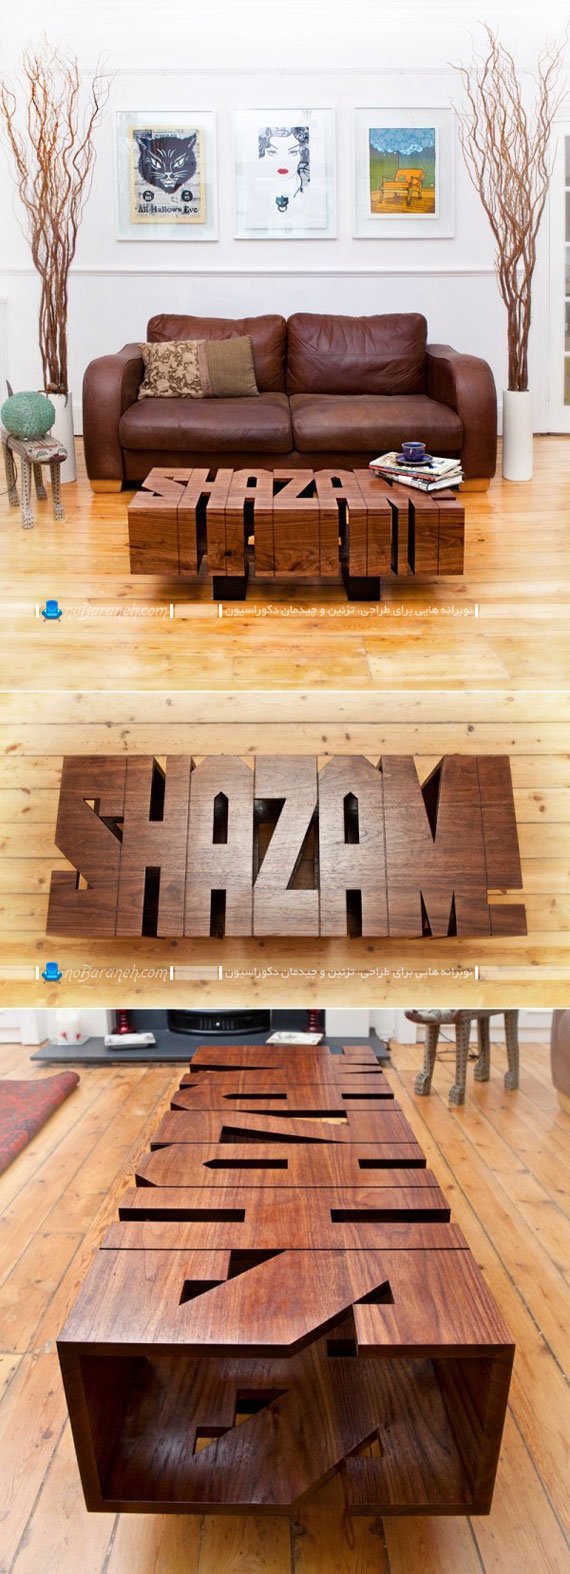 میز جلو مبلی چوبی با طراحی فانتزی شیک مدرن